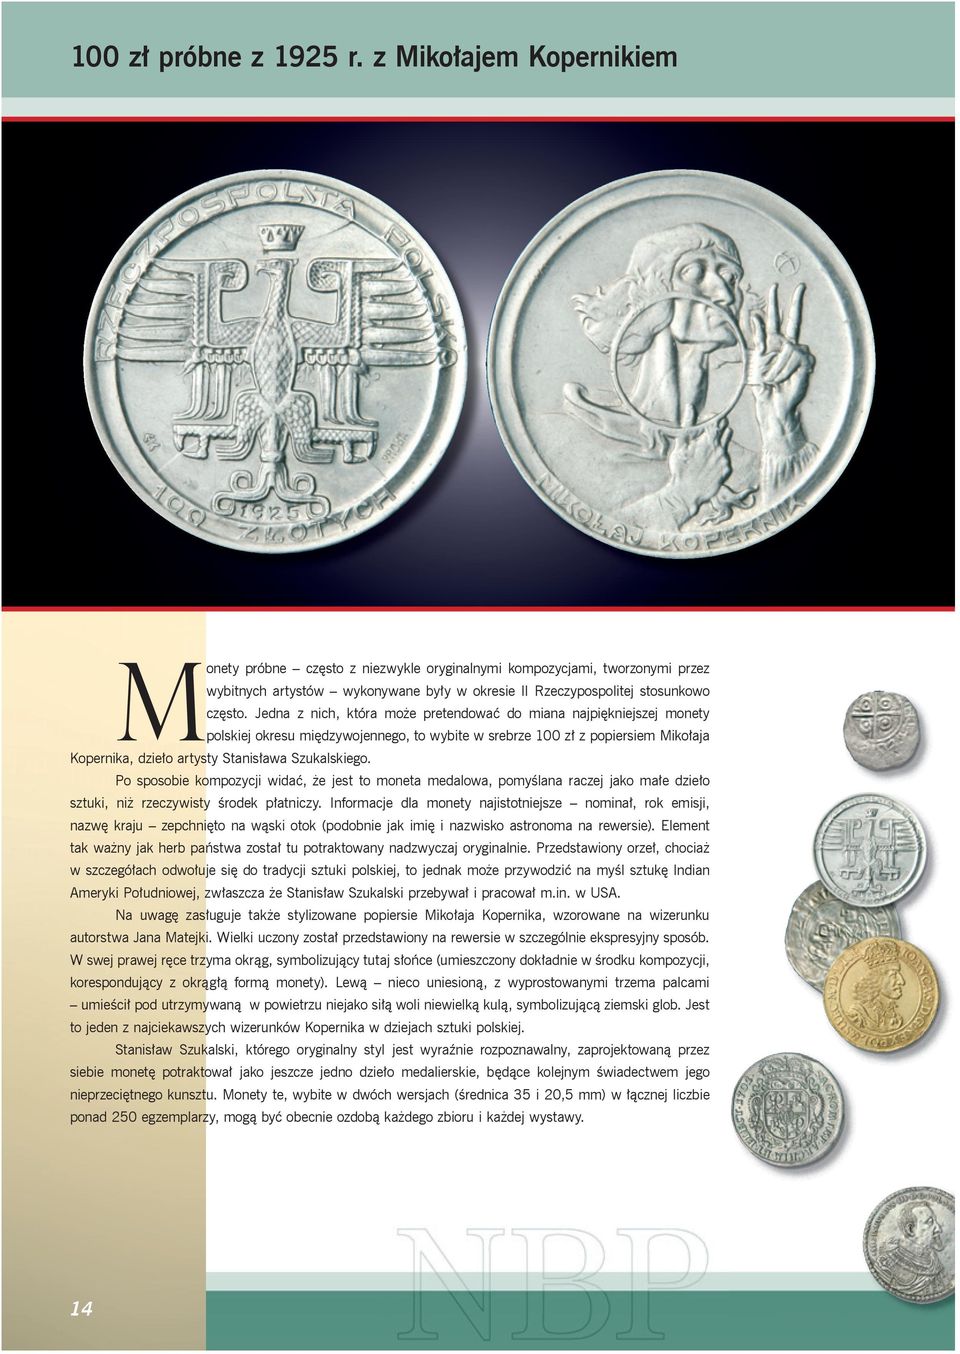 Jedna z nich, która może pretendować do miana najpiękniejszej monety polskiej okresu międzywojennego, to wybite w srebrze 100 zł z popiersiem Mikołaja Kopernika, dzieło artysty Stanisława